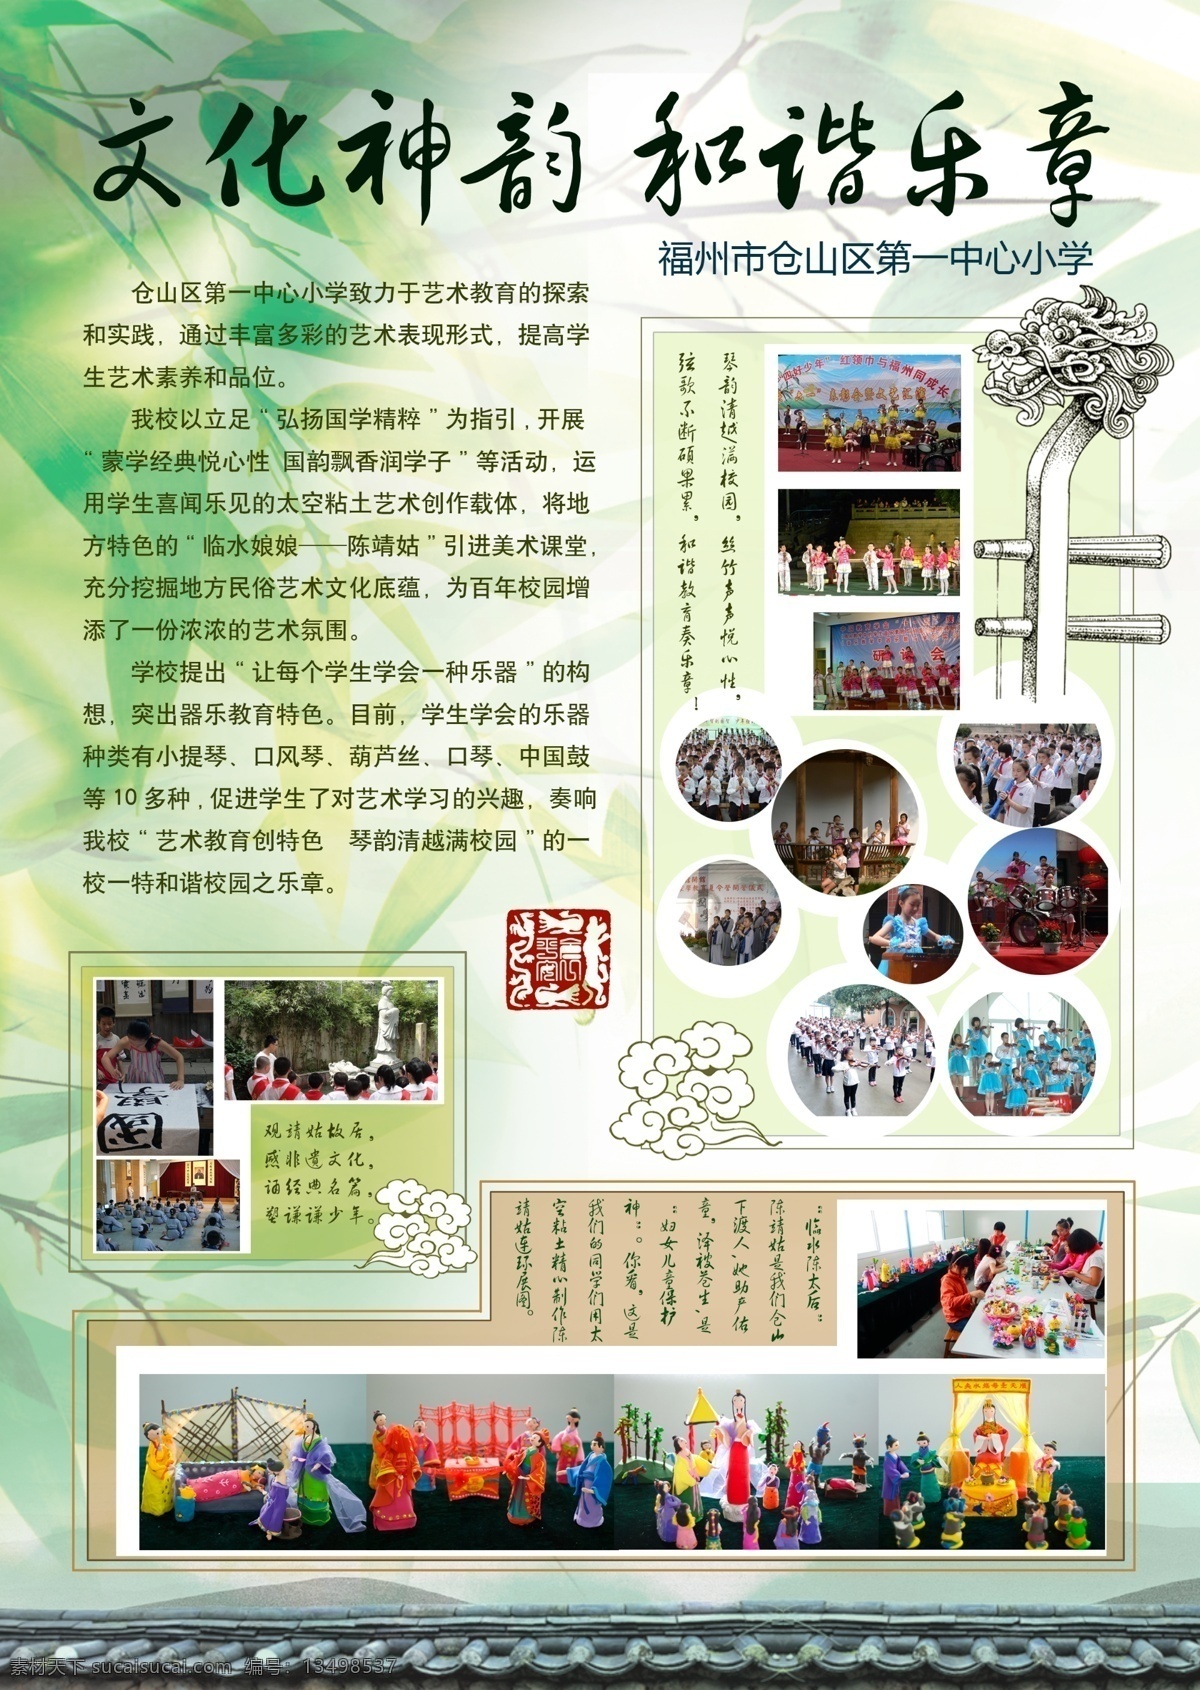 艺术 学校 宣传单 乐器 展板 中国 dm宣传单 广告设计模板 源文件